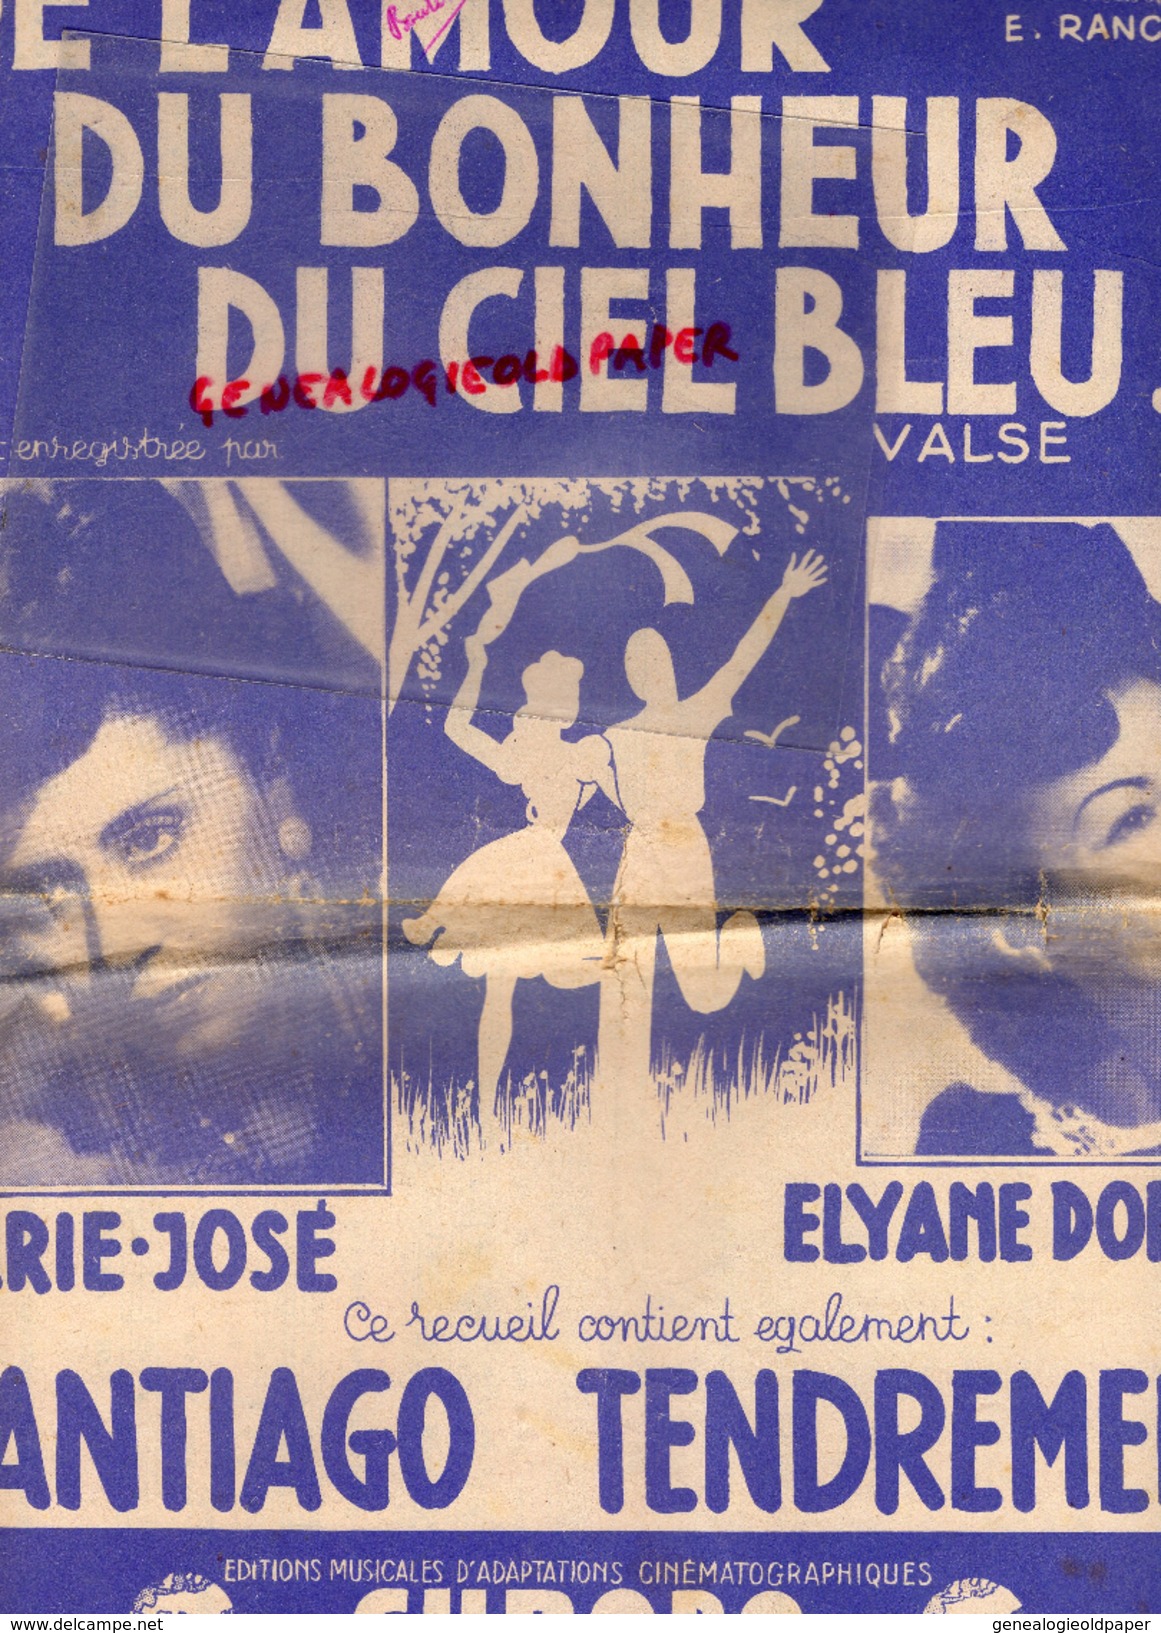 PARTITION MUSICALE- DE L' AMOUR DU BONHEUR DU CIEL BLEU-VALSE-MARIE JOSE-ELYANE DORSAY-SANTIAGO TENDREMENT-BATIFOL PARIS - Partitions Musicales Anciennes